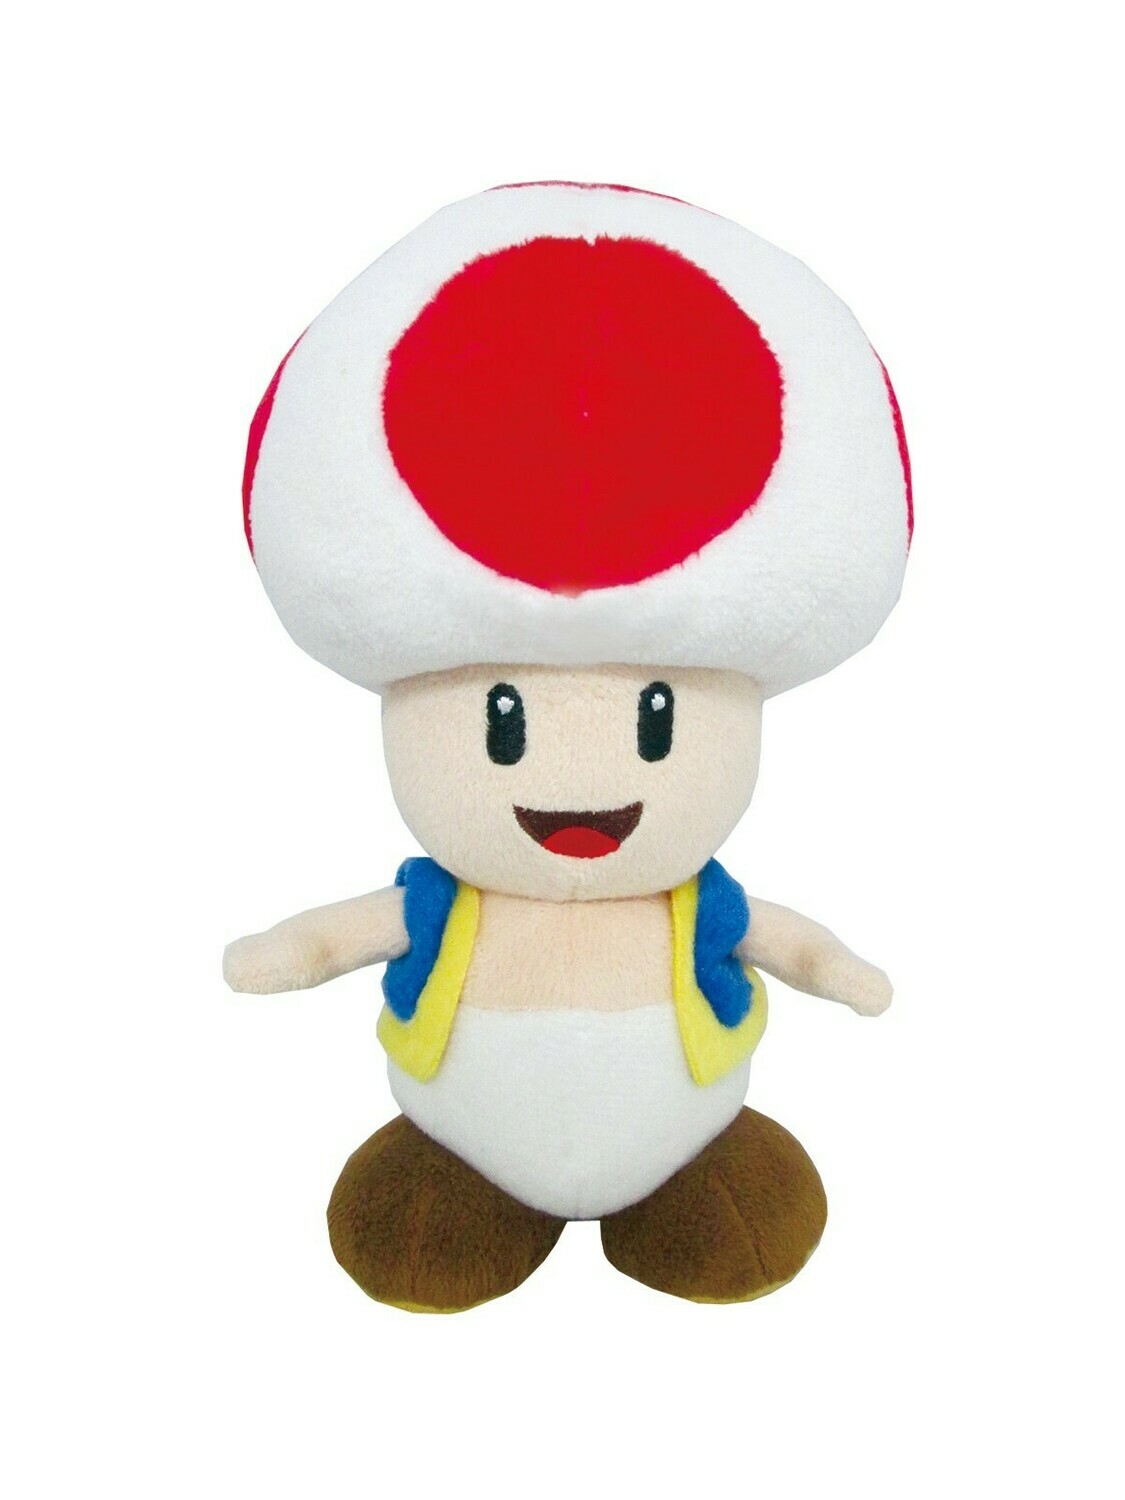 Super Mario All Stars Plush Doll - Toad 8 Inch